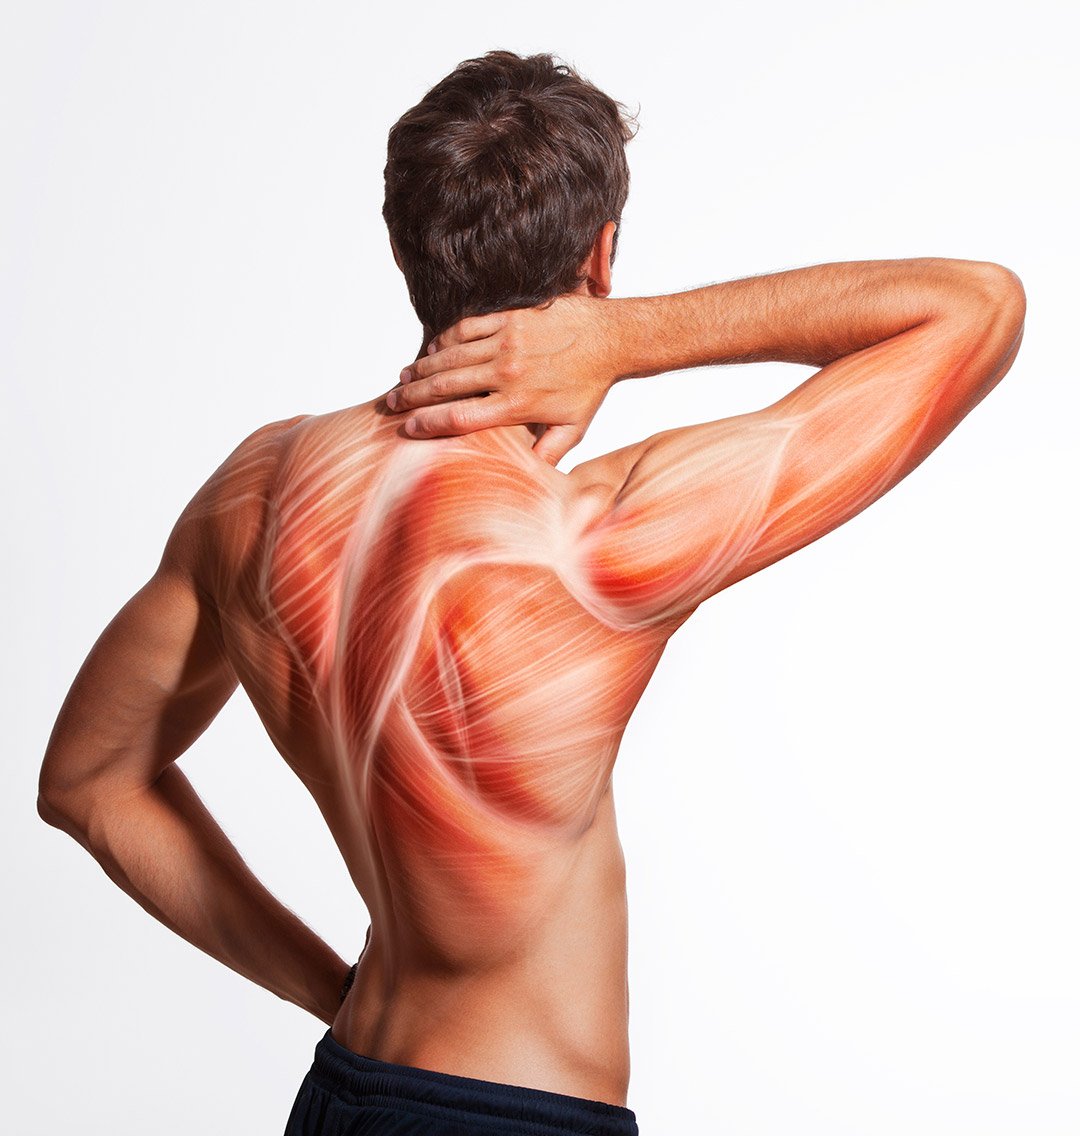 Como evitar y rebajar el dolor muscular que afecta a tantas personas